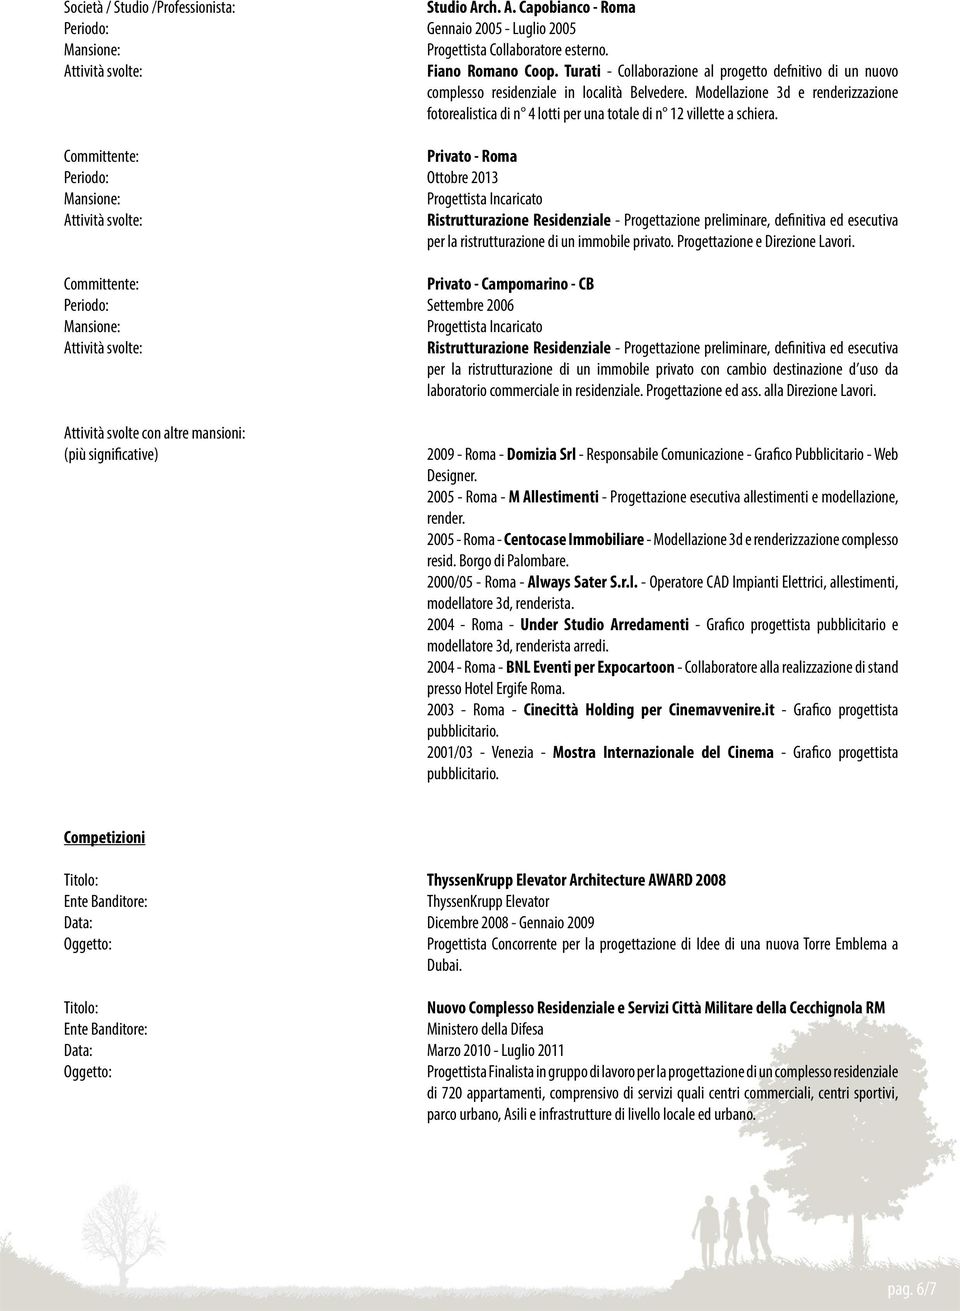 Committente: Privato - Roma Ottobre 2013 Progettista Incaricato Ristrutturazione Residenziale - Progettazione preliminare, definitiva ed esecutiva per la ristrutturazione di un immobile privato.